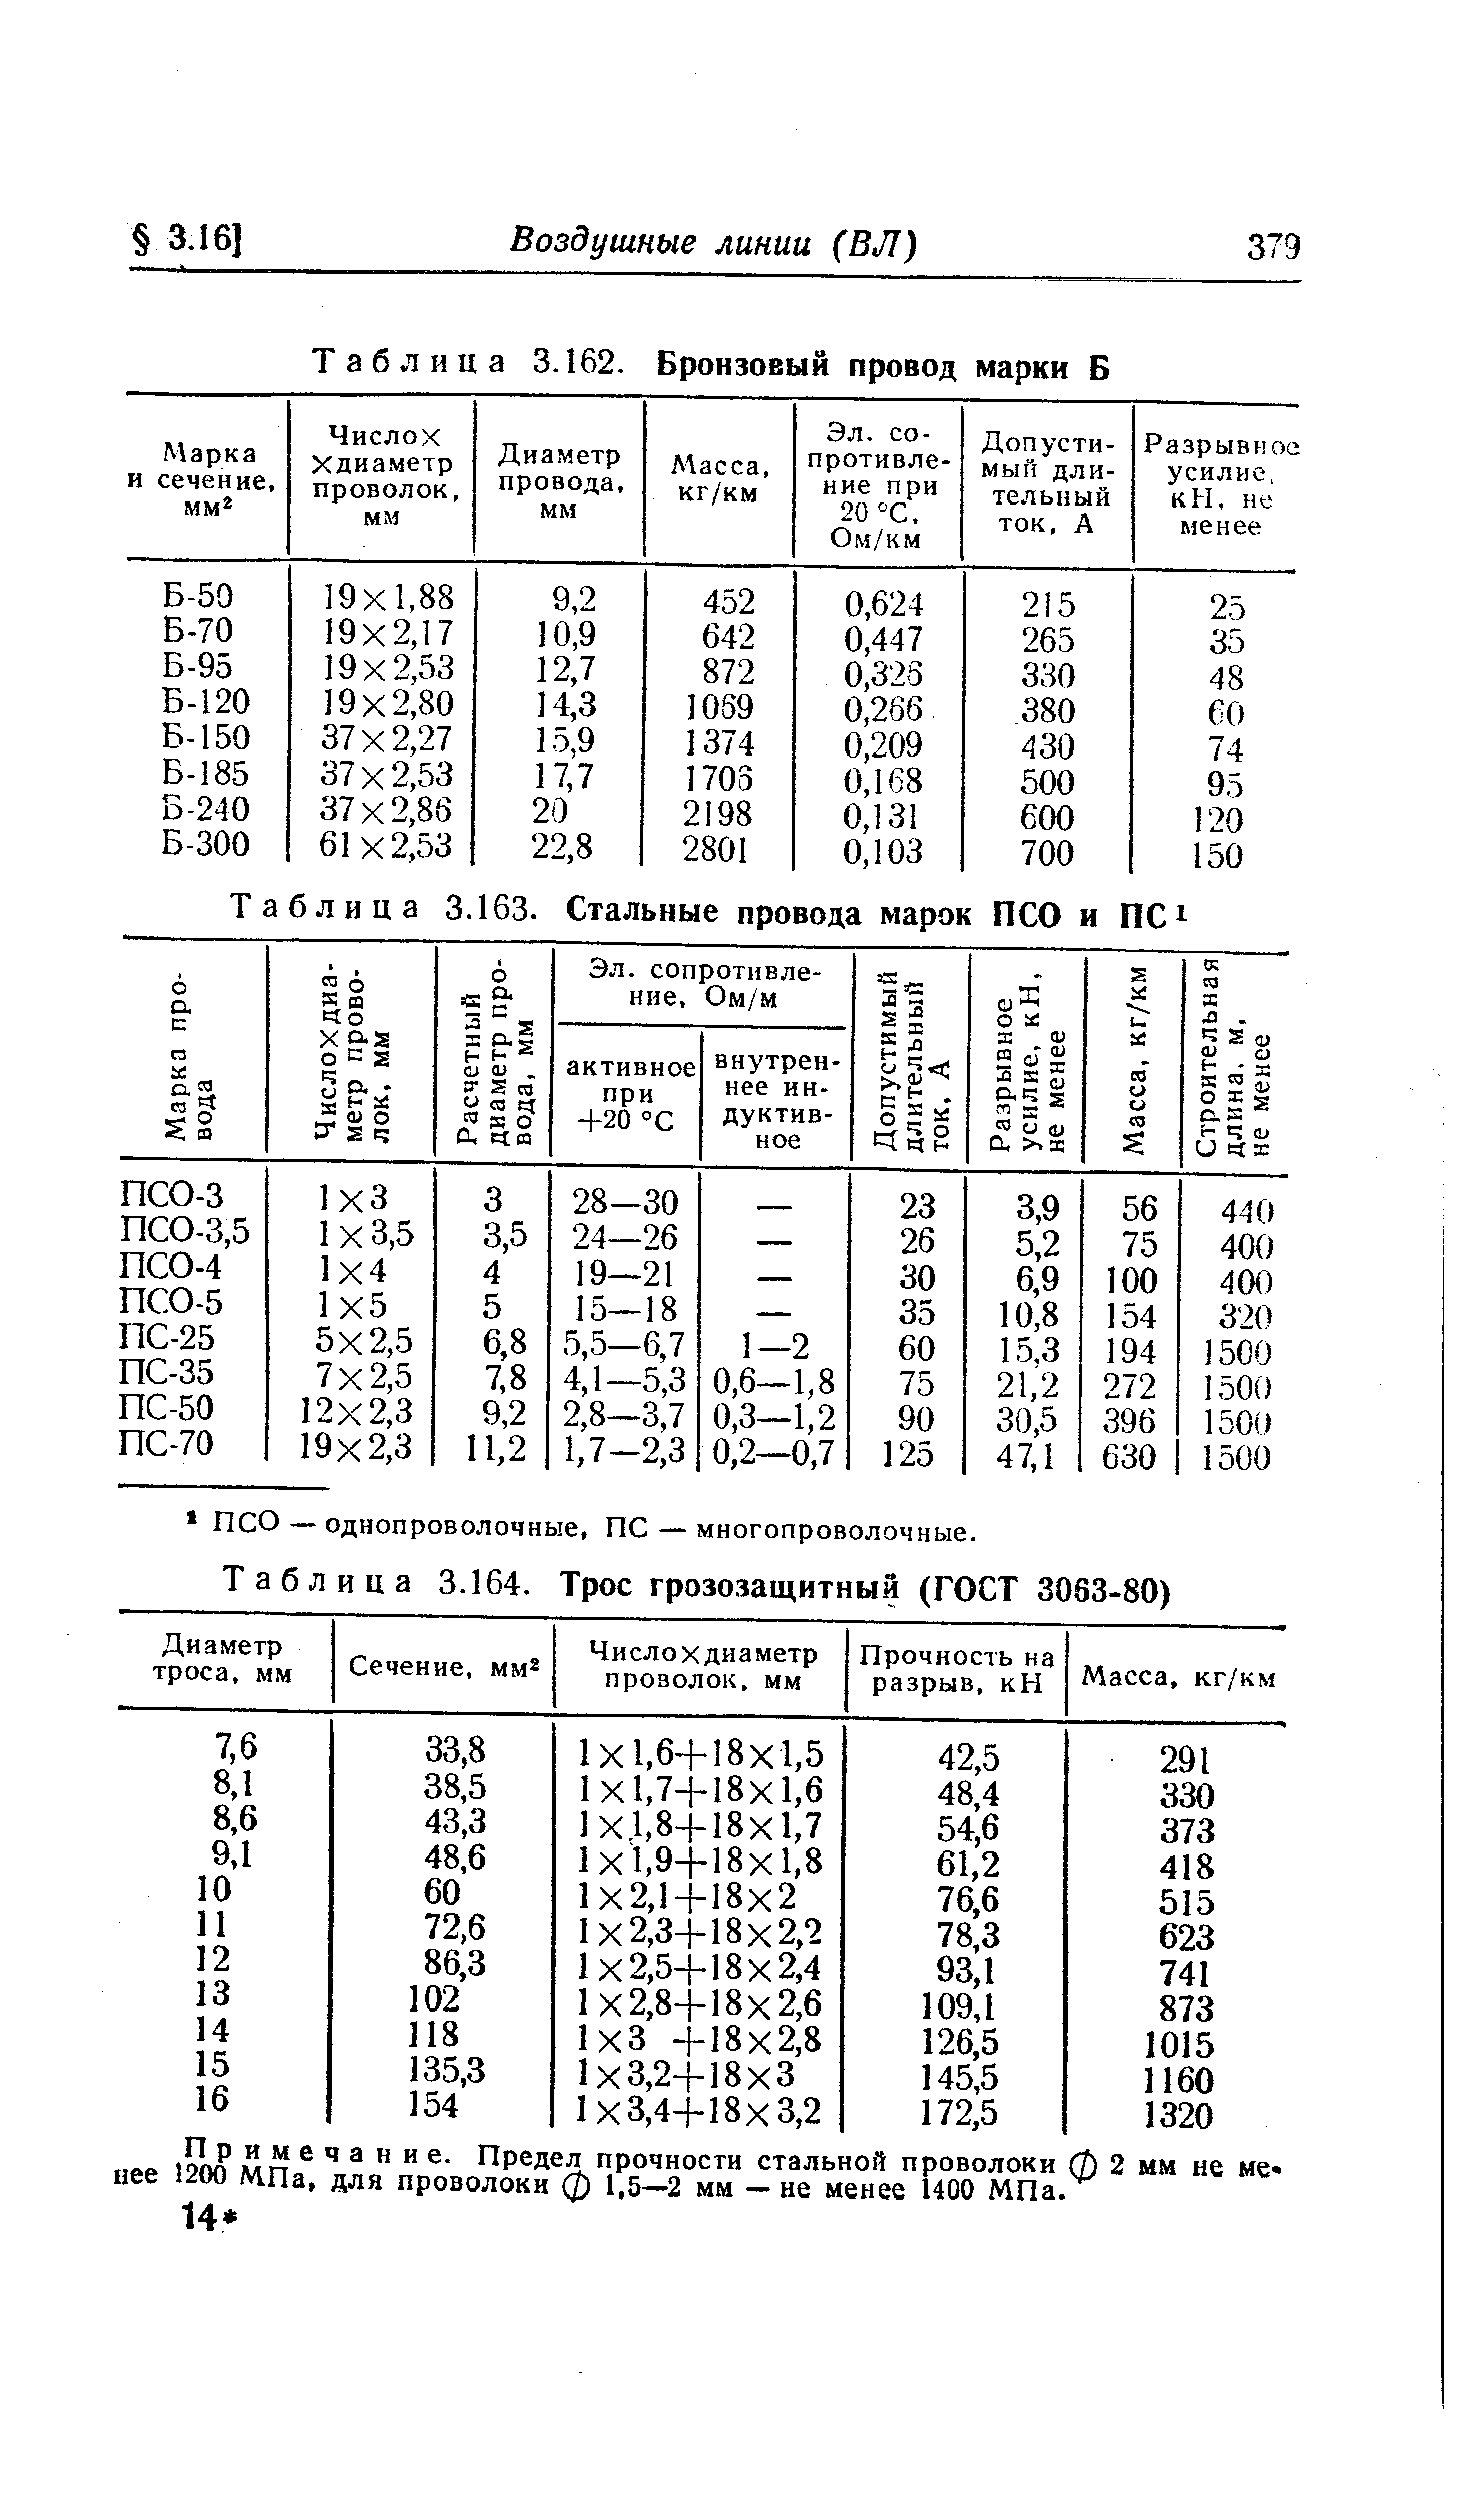 Таблица 3.164. Трос грозозащитный (ГОСТ 3063-80)
